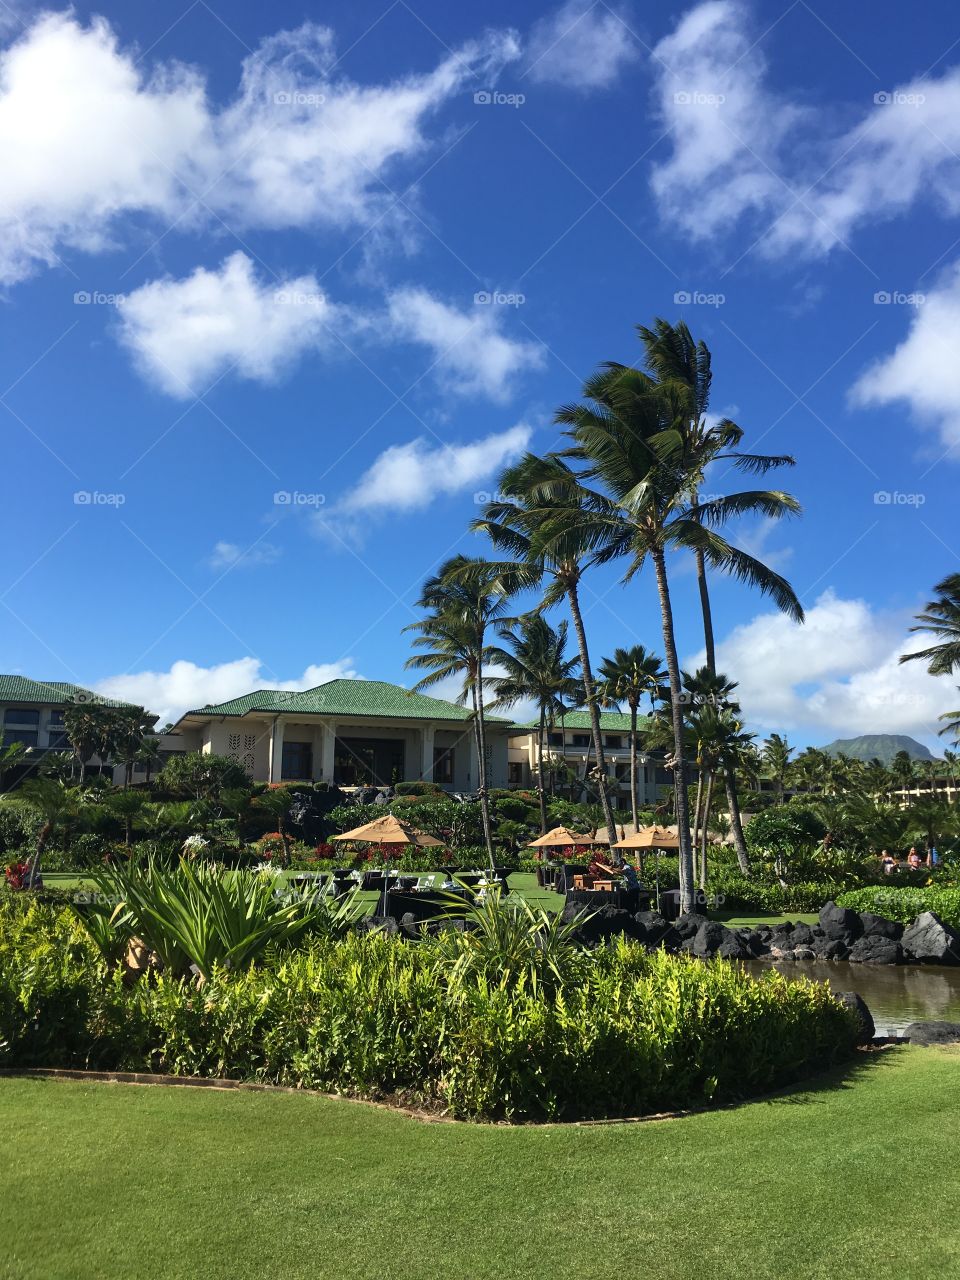 Resort in Kauai.